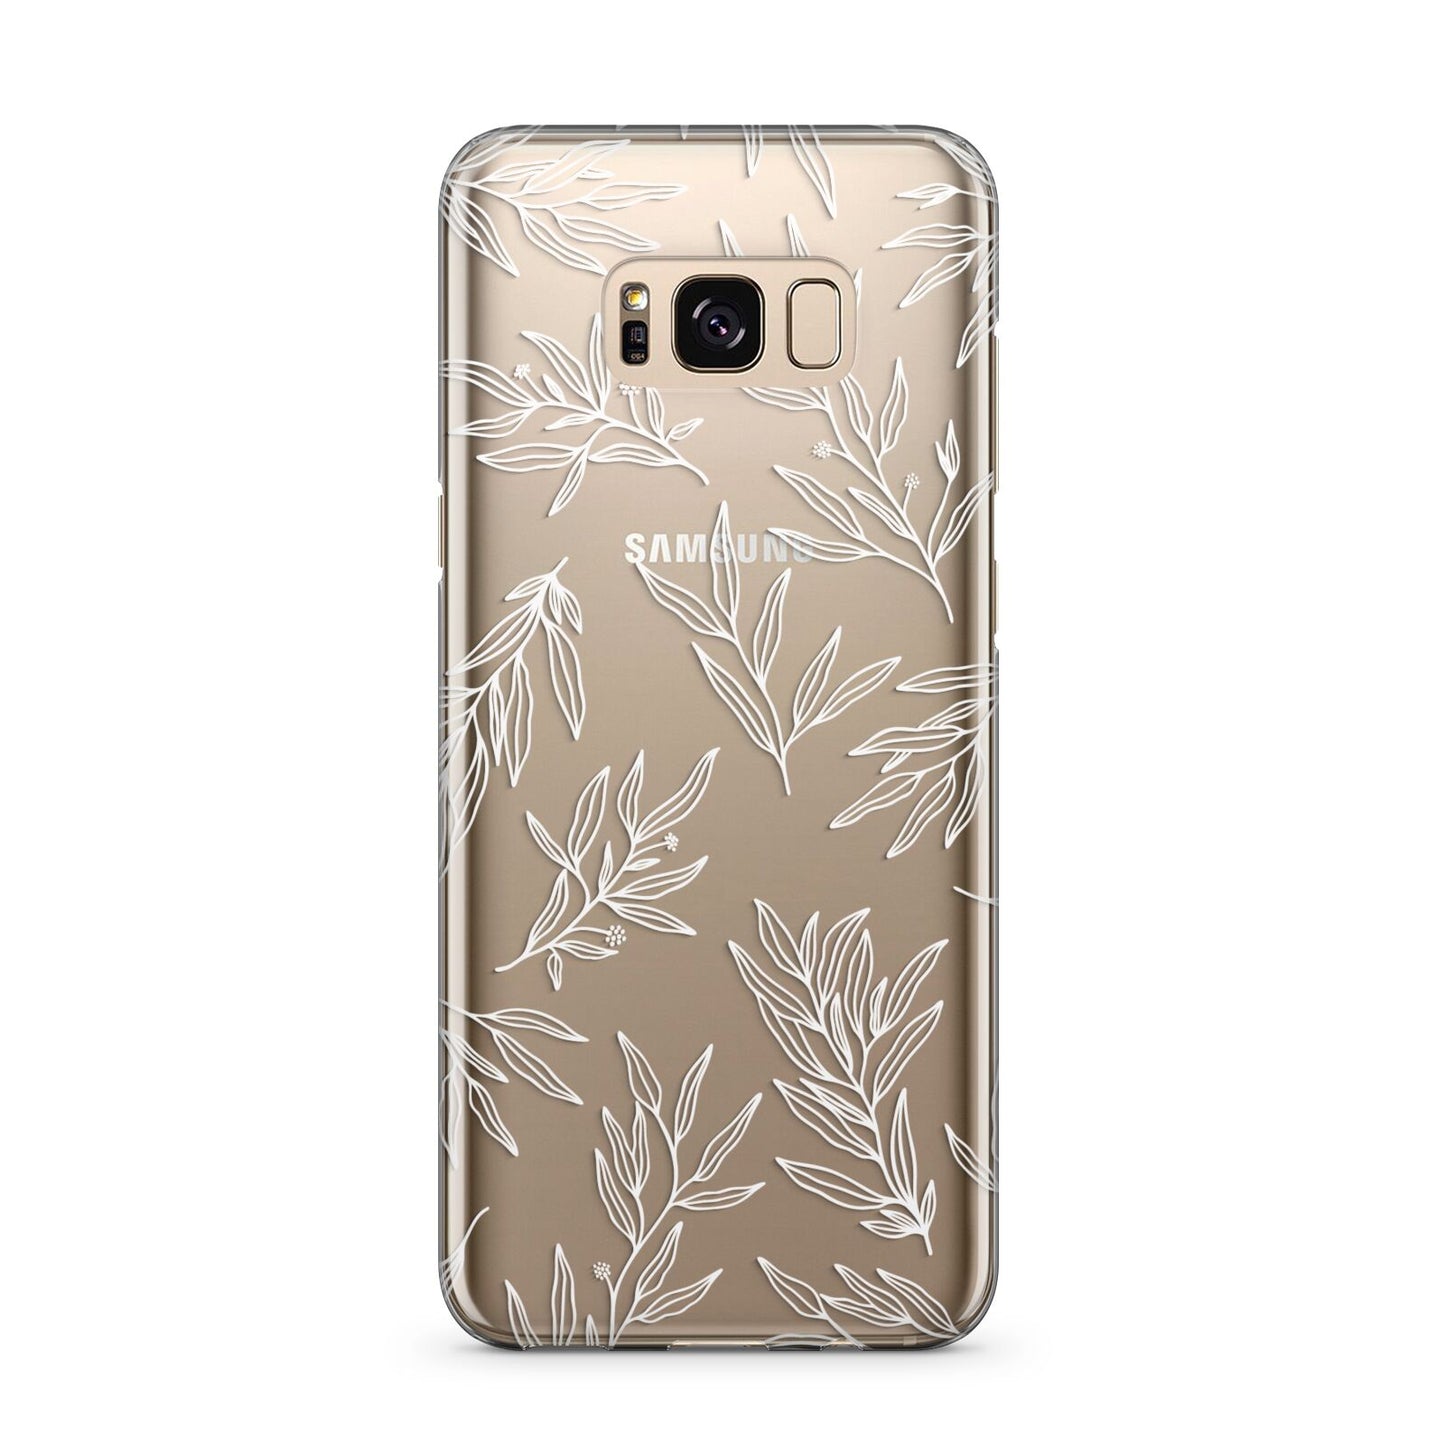 Botanical Leaf Samsung Galaxy S8 Plus Case